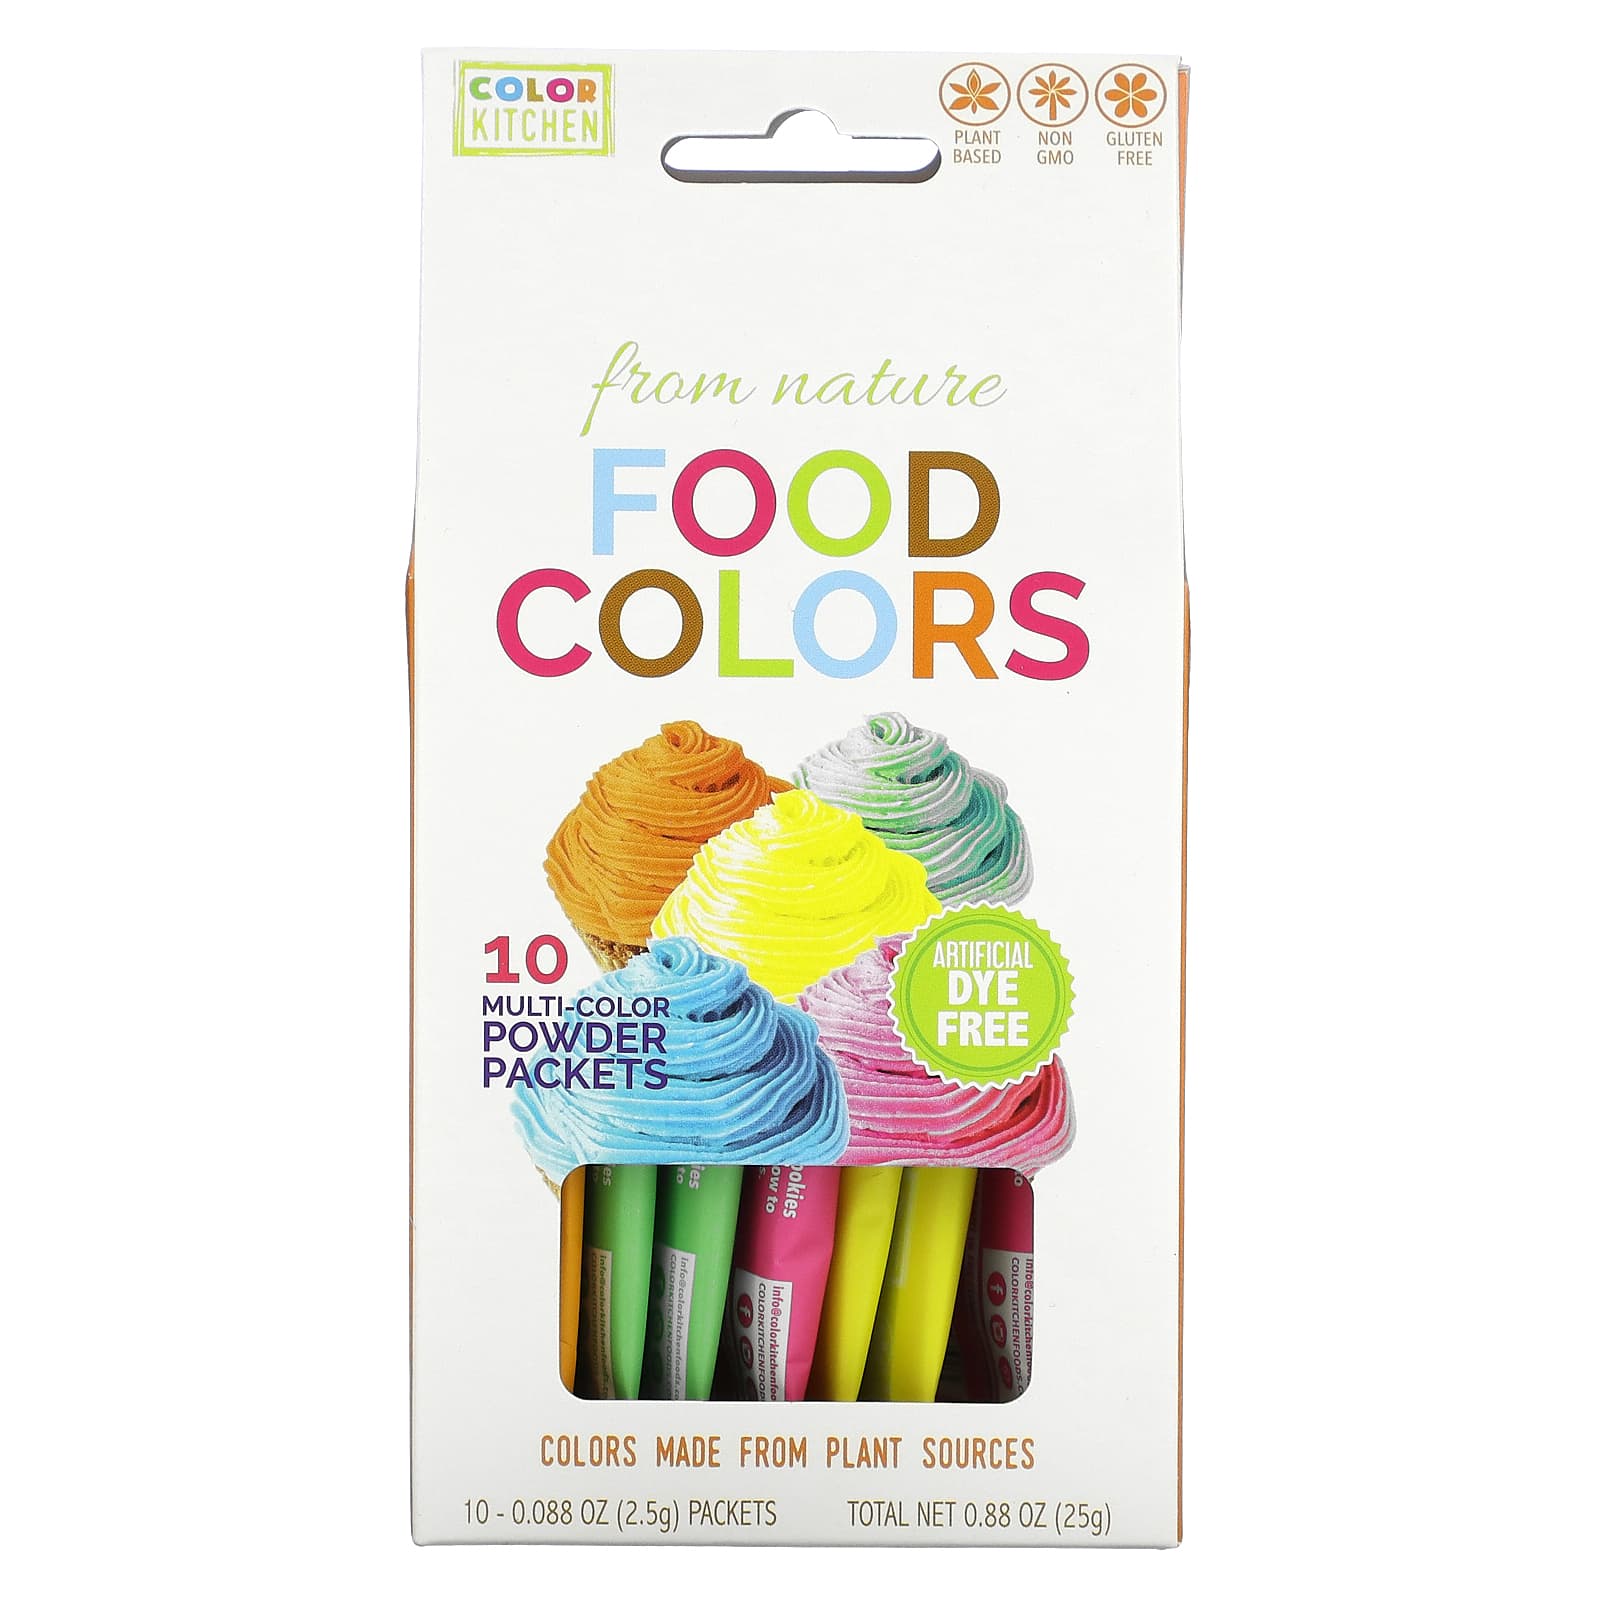 Colorantes alimentarios naturales, Multicolor, 3 sobres de colores, 3 g  (0,11 oz) cada uno